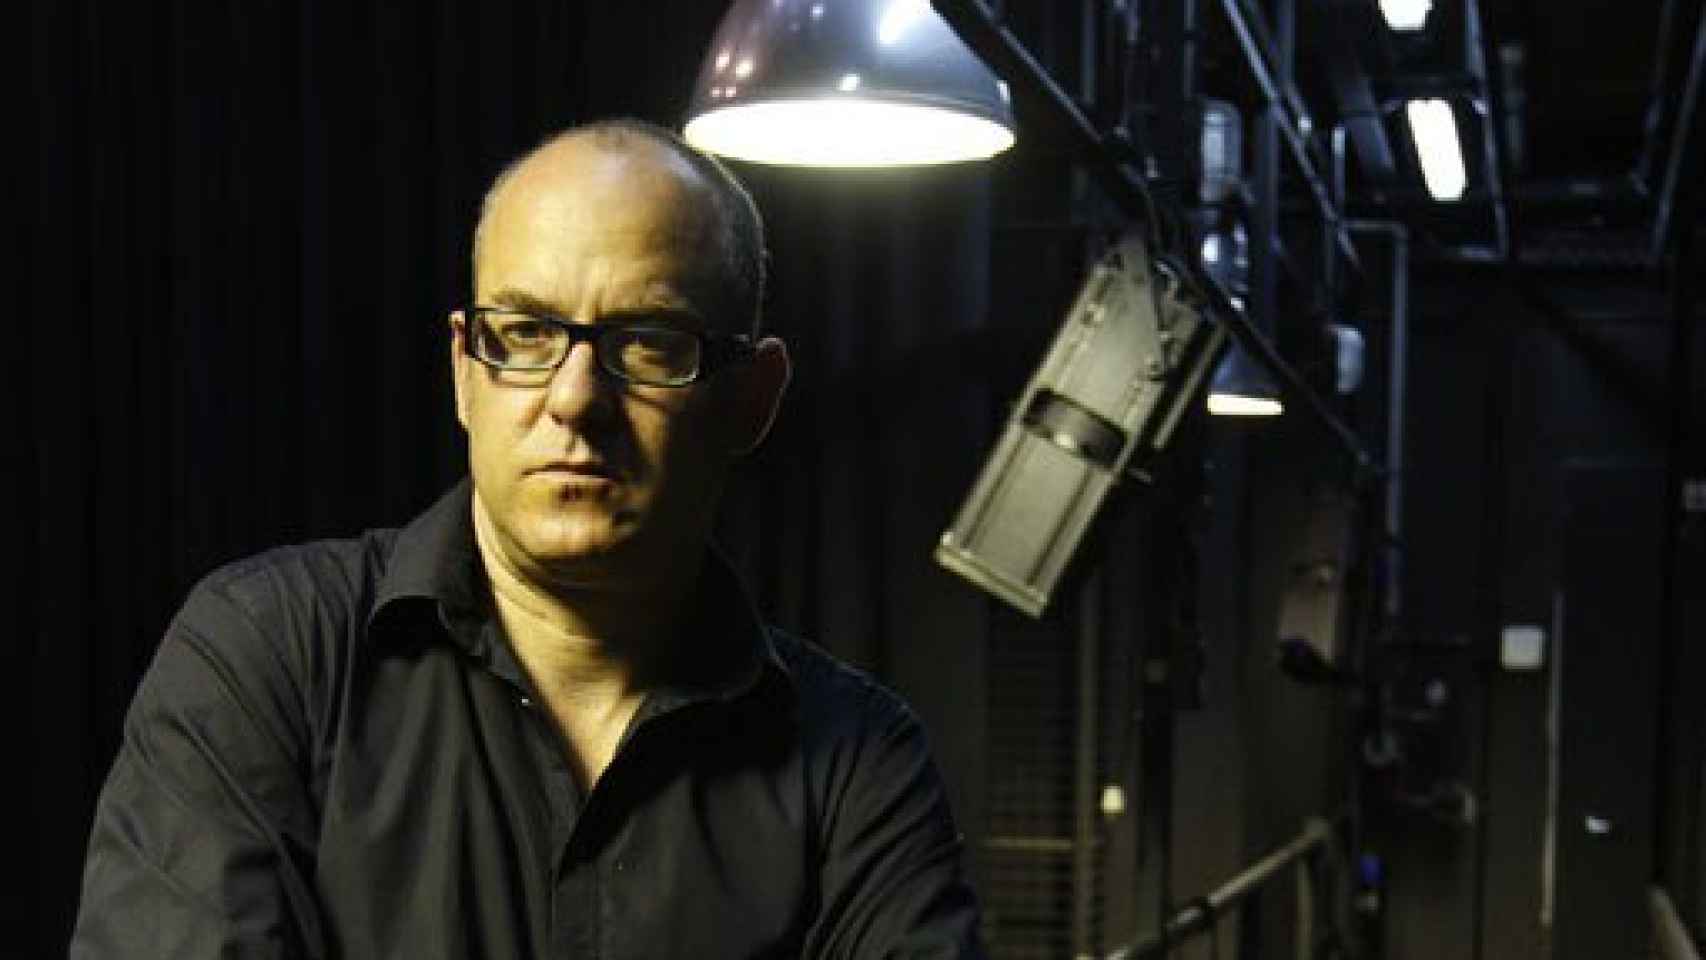 Image: Àlex Rigola dimite como director artístico de los Teatros del Canal